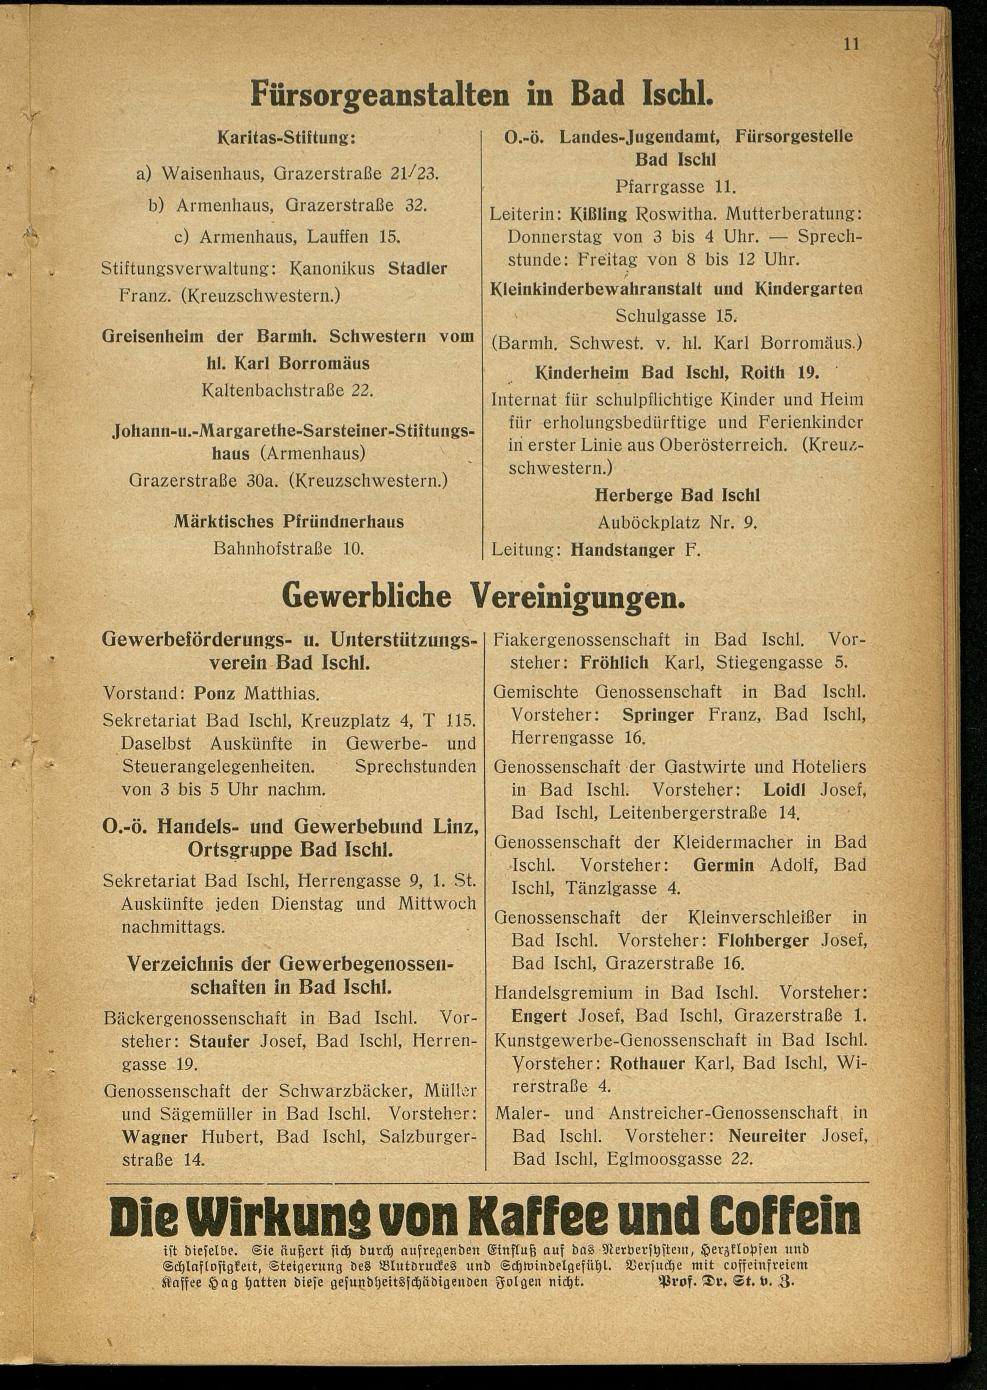 Handels- und Gewerbe-Adressbuch nebst Häuser-Verzeichnis der Kurortsgemeinde Bad Ischl 1925 - Seite 15